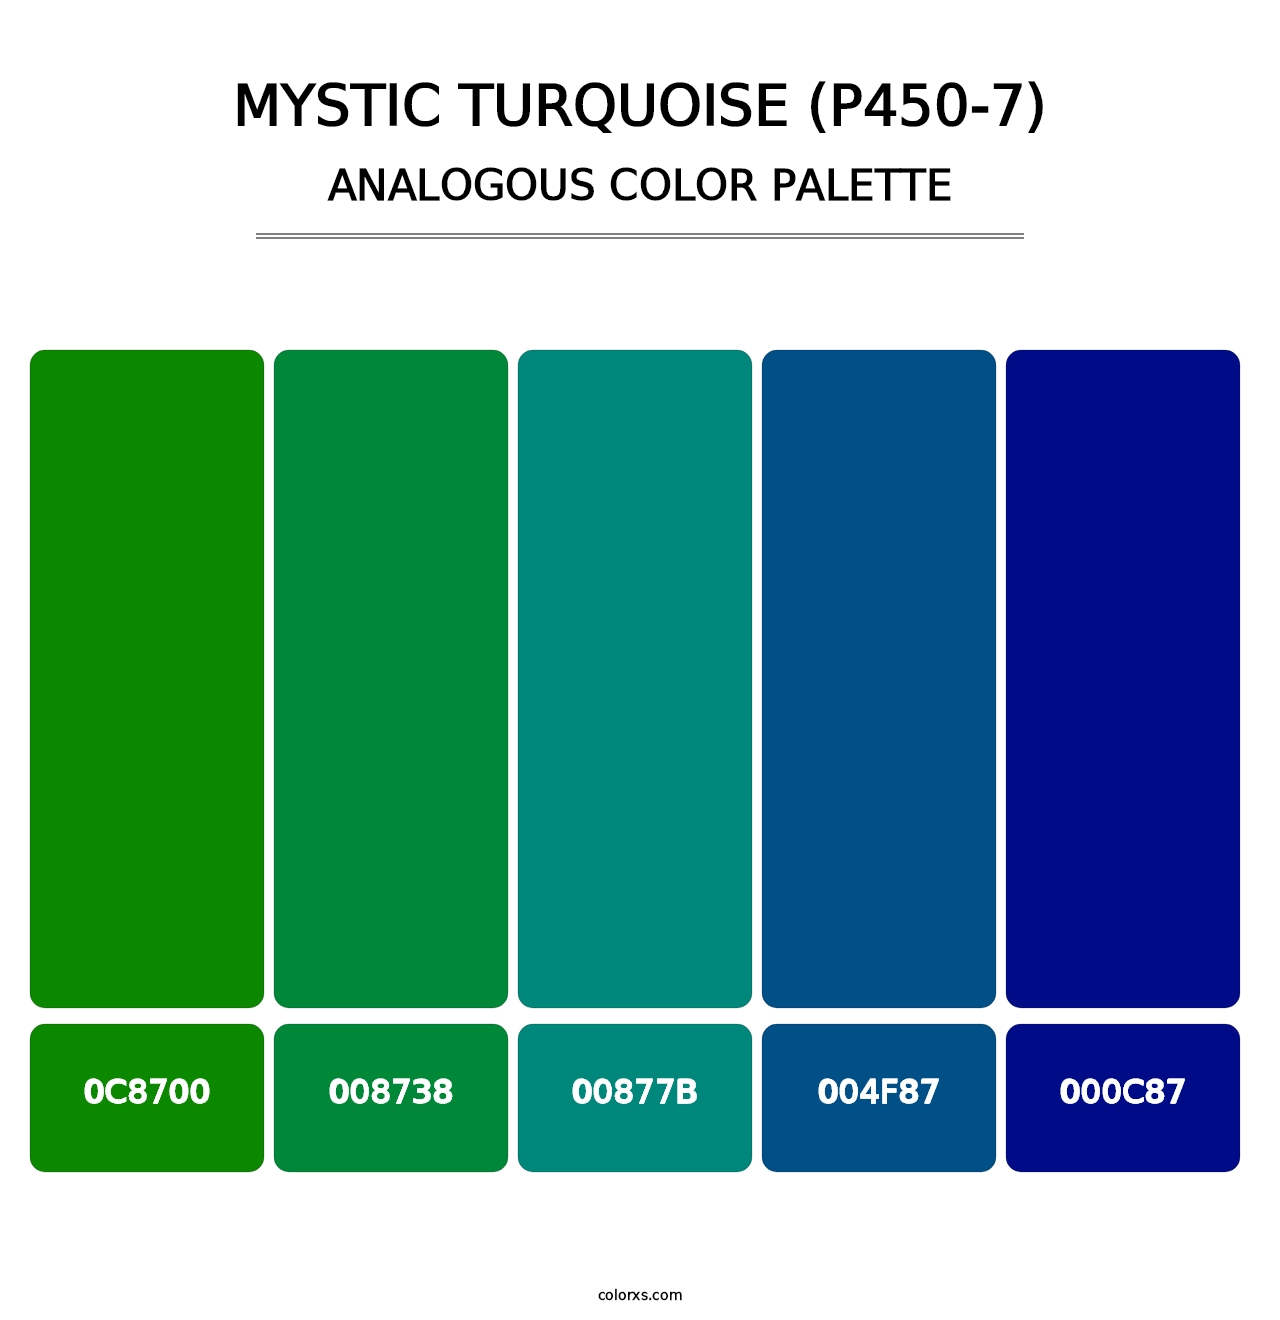 Mystic Turquoise (P450-7) - Analogous Color Palette